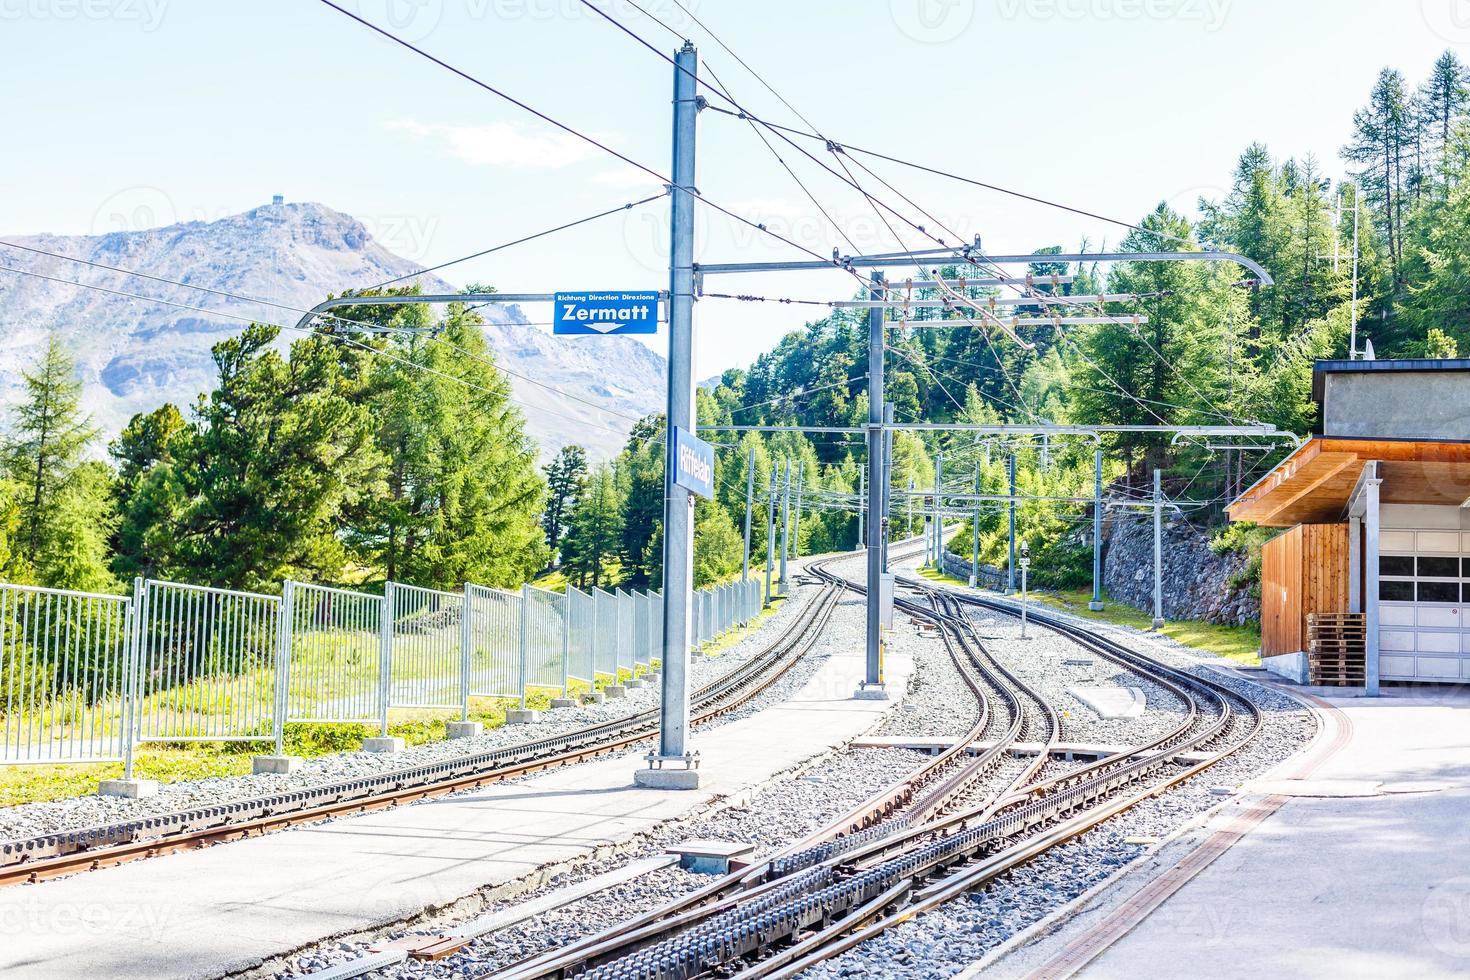 trem de montanha suíço cruzou os Alpes, ferrovia nas montanhas foto